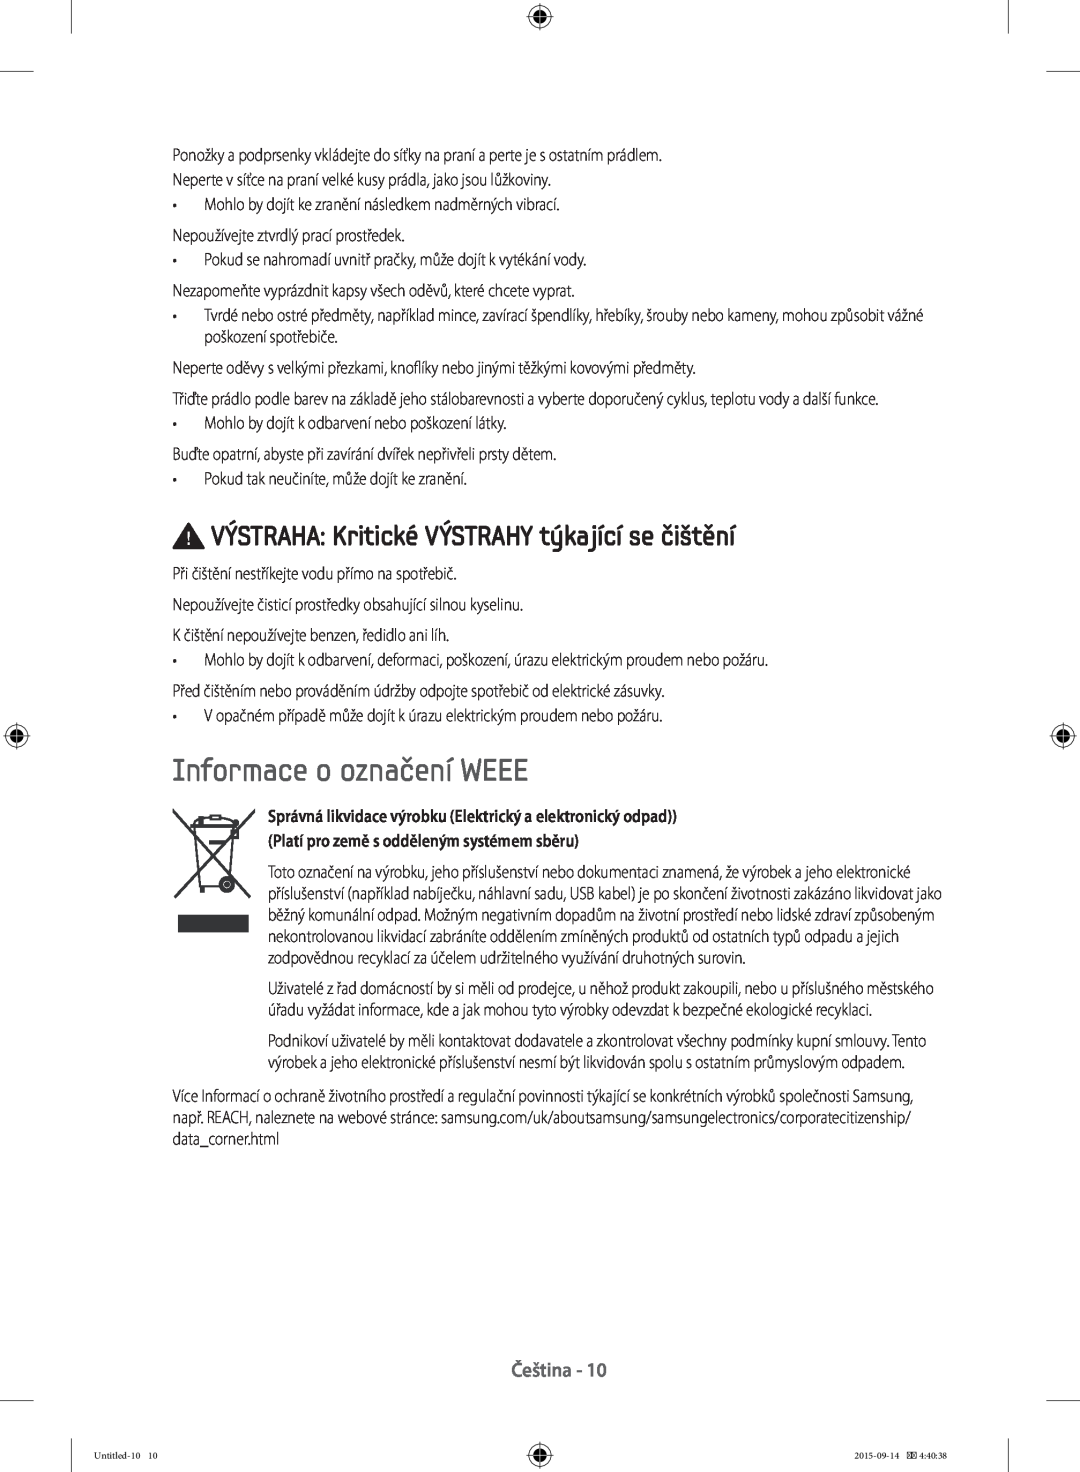 Samsung WF70F5E0W4W/LE, WF80F5E0W4W/LE Informace o označení WEEE, VÝSTRAHA Kritické VÝSTRAHY týkající se čištění, Čeština 